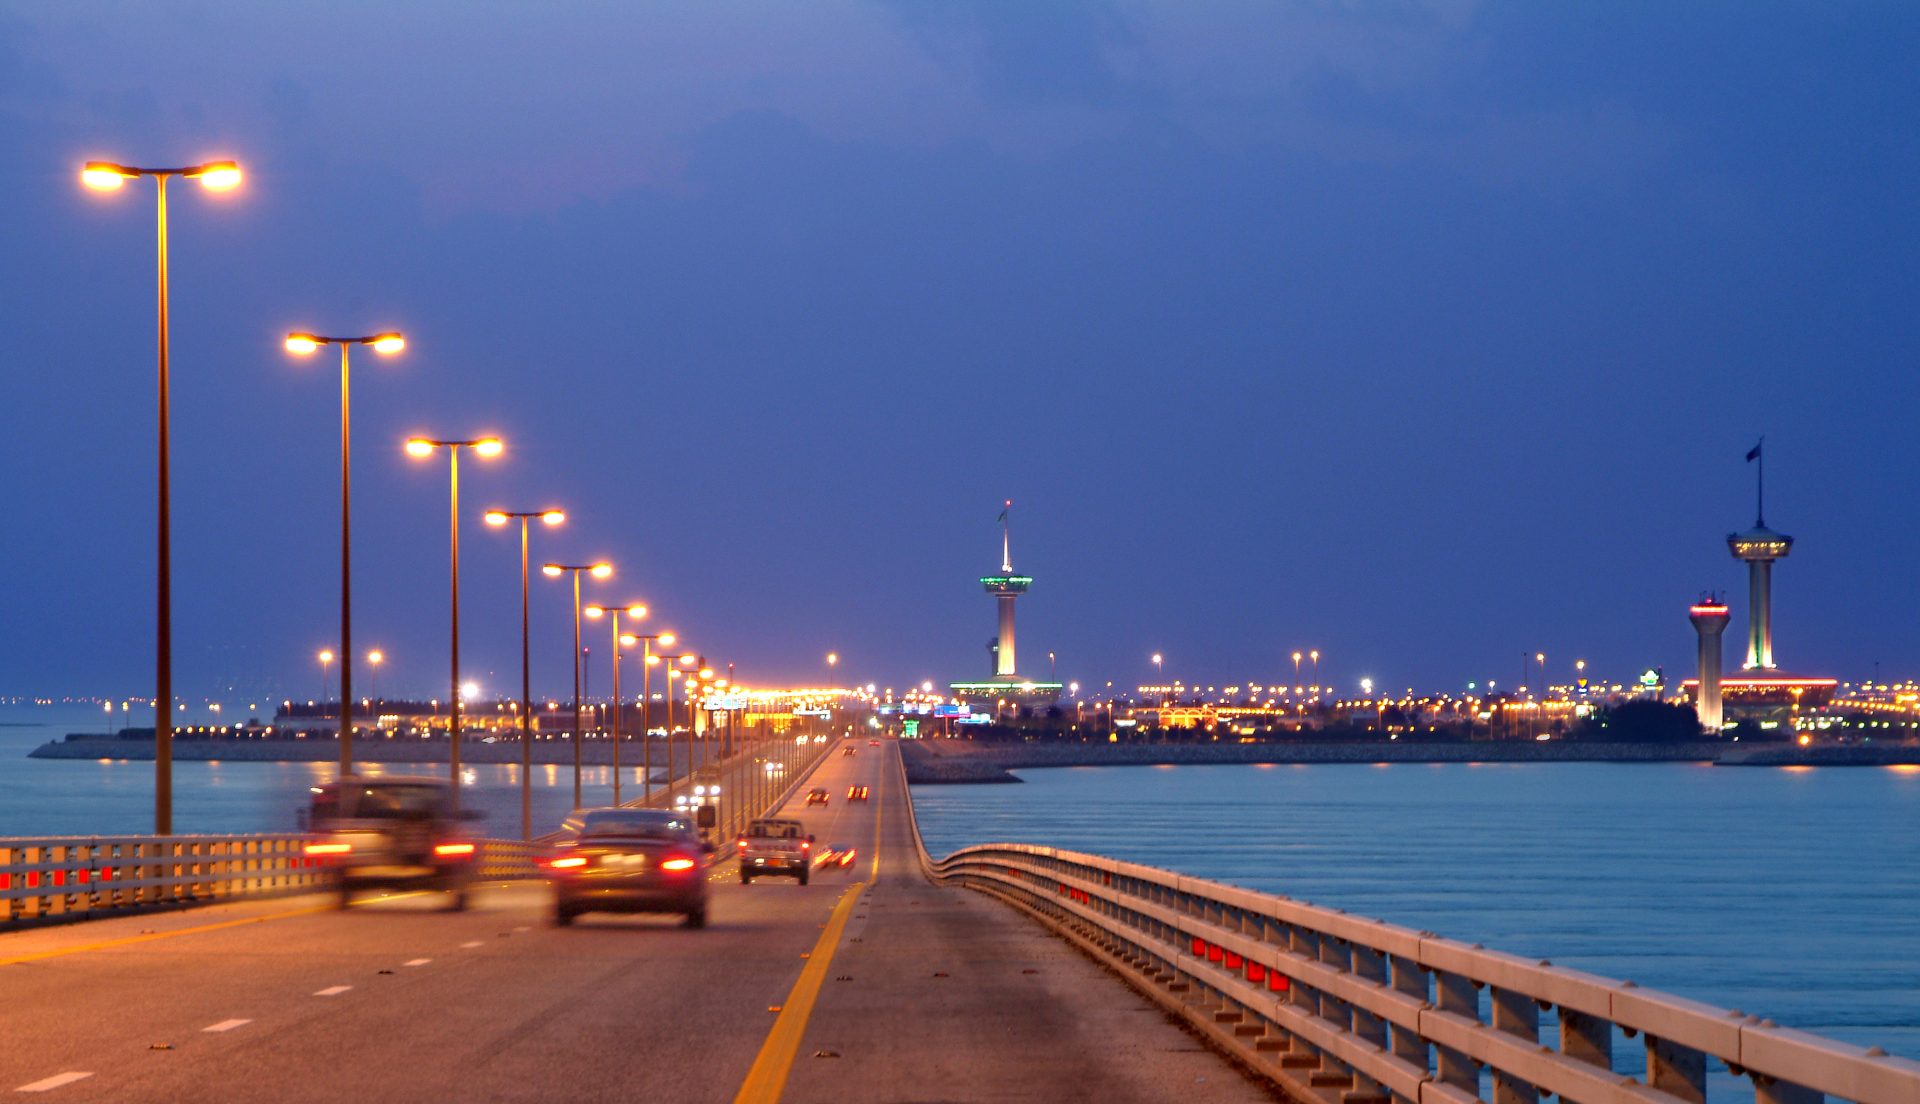 جسر الملك فهد: تحديد مسارات الجنسيات مقتصر على منطقة قدوم الجوازات السعودية